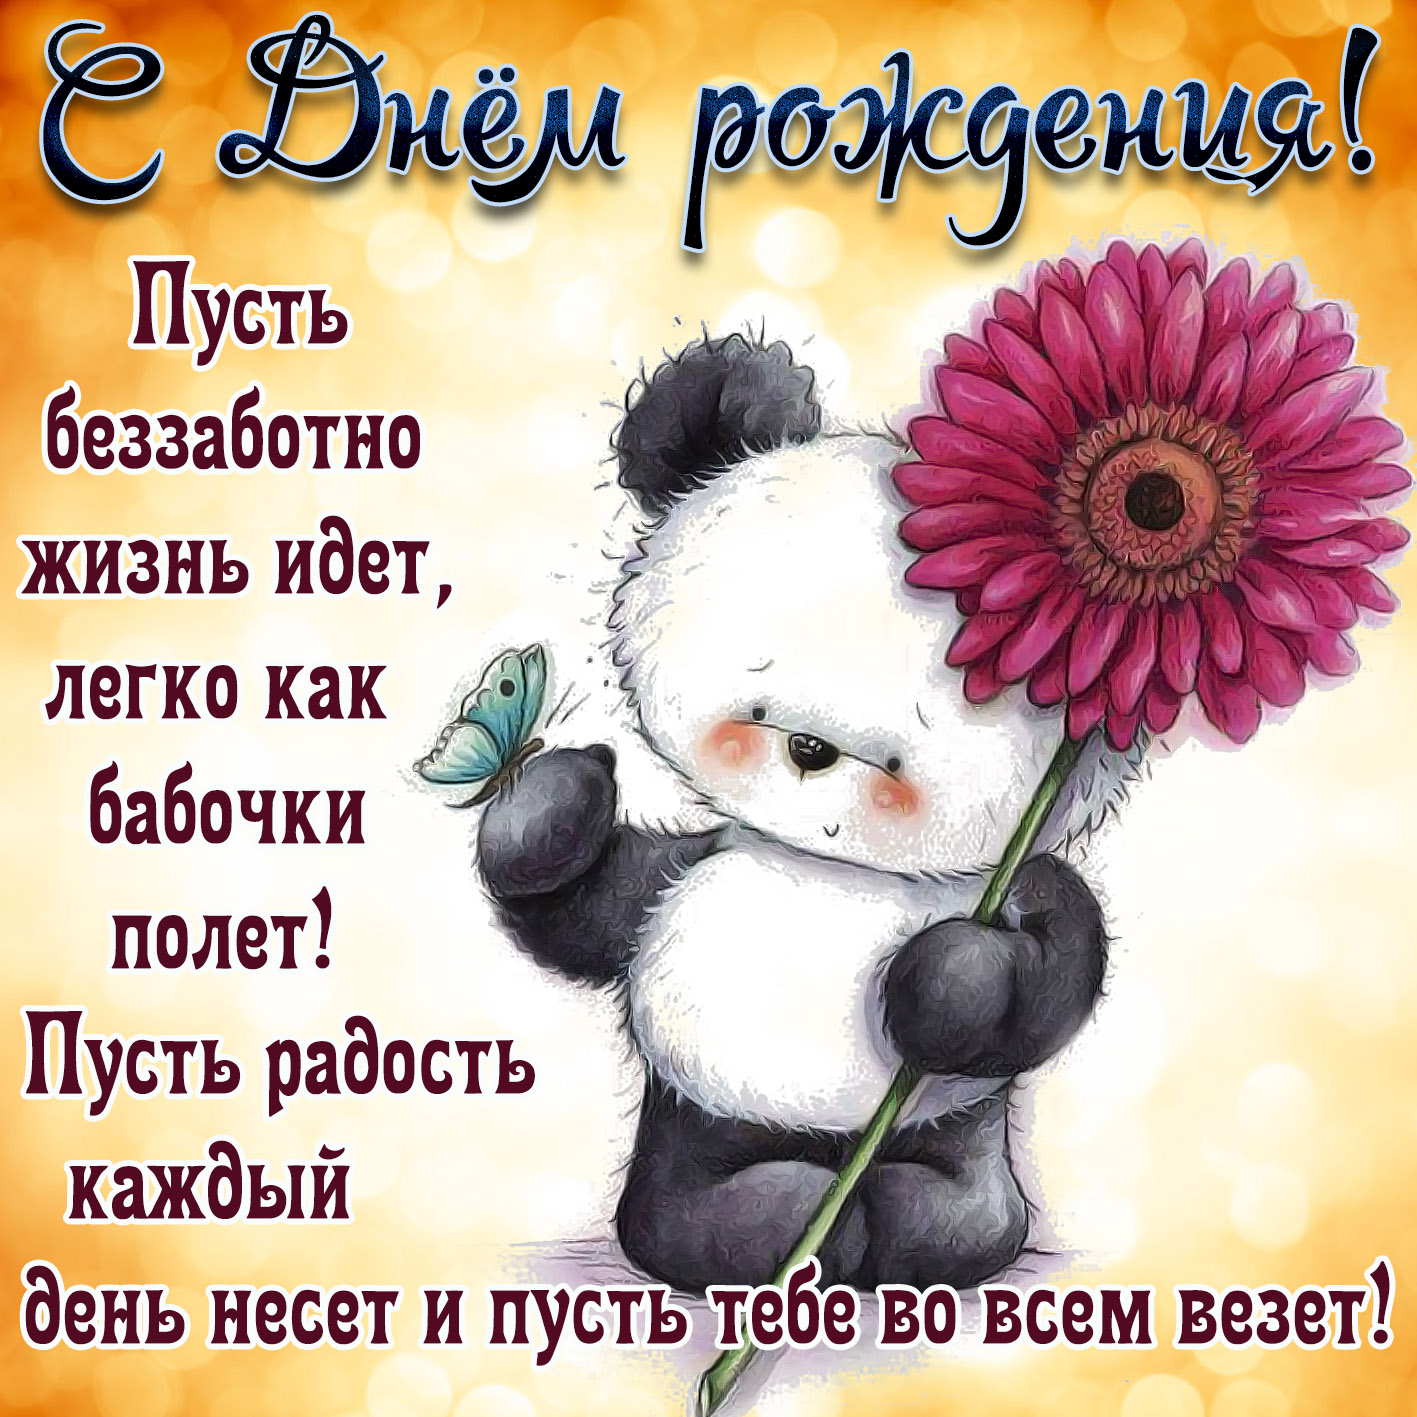 Открытка на День рождения - забавный медвежонок с цветочком для девушки